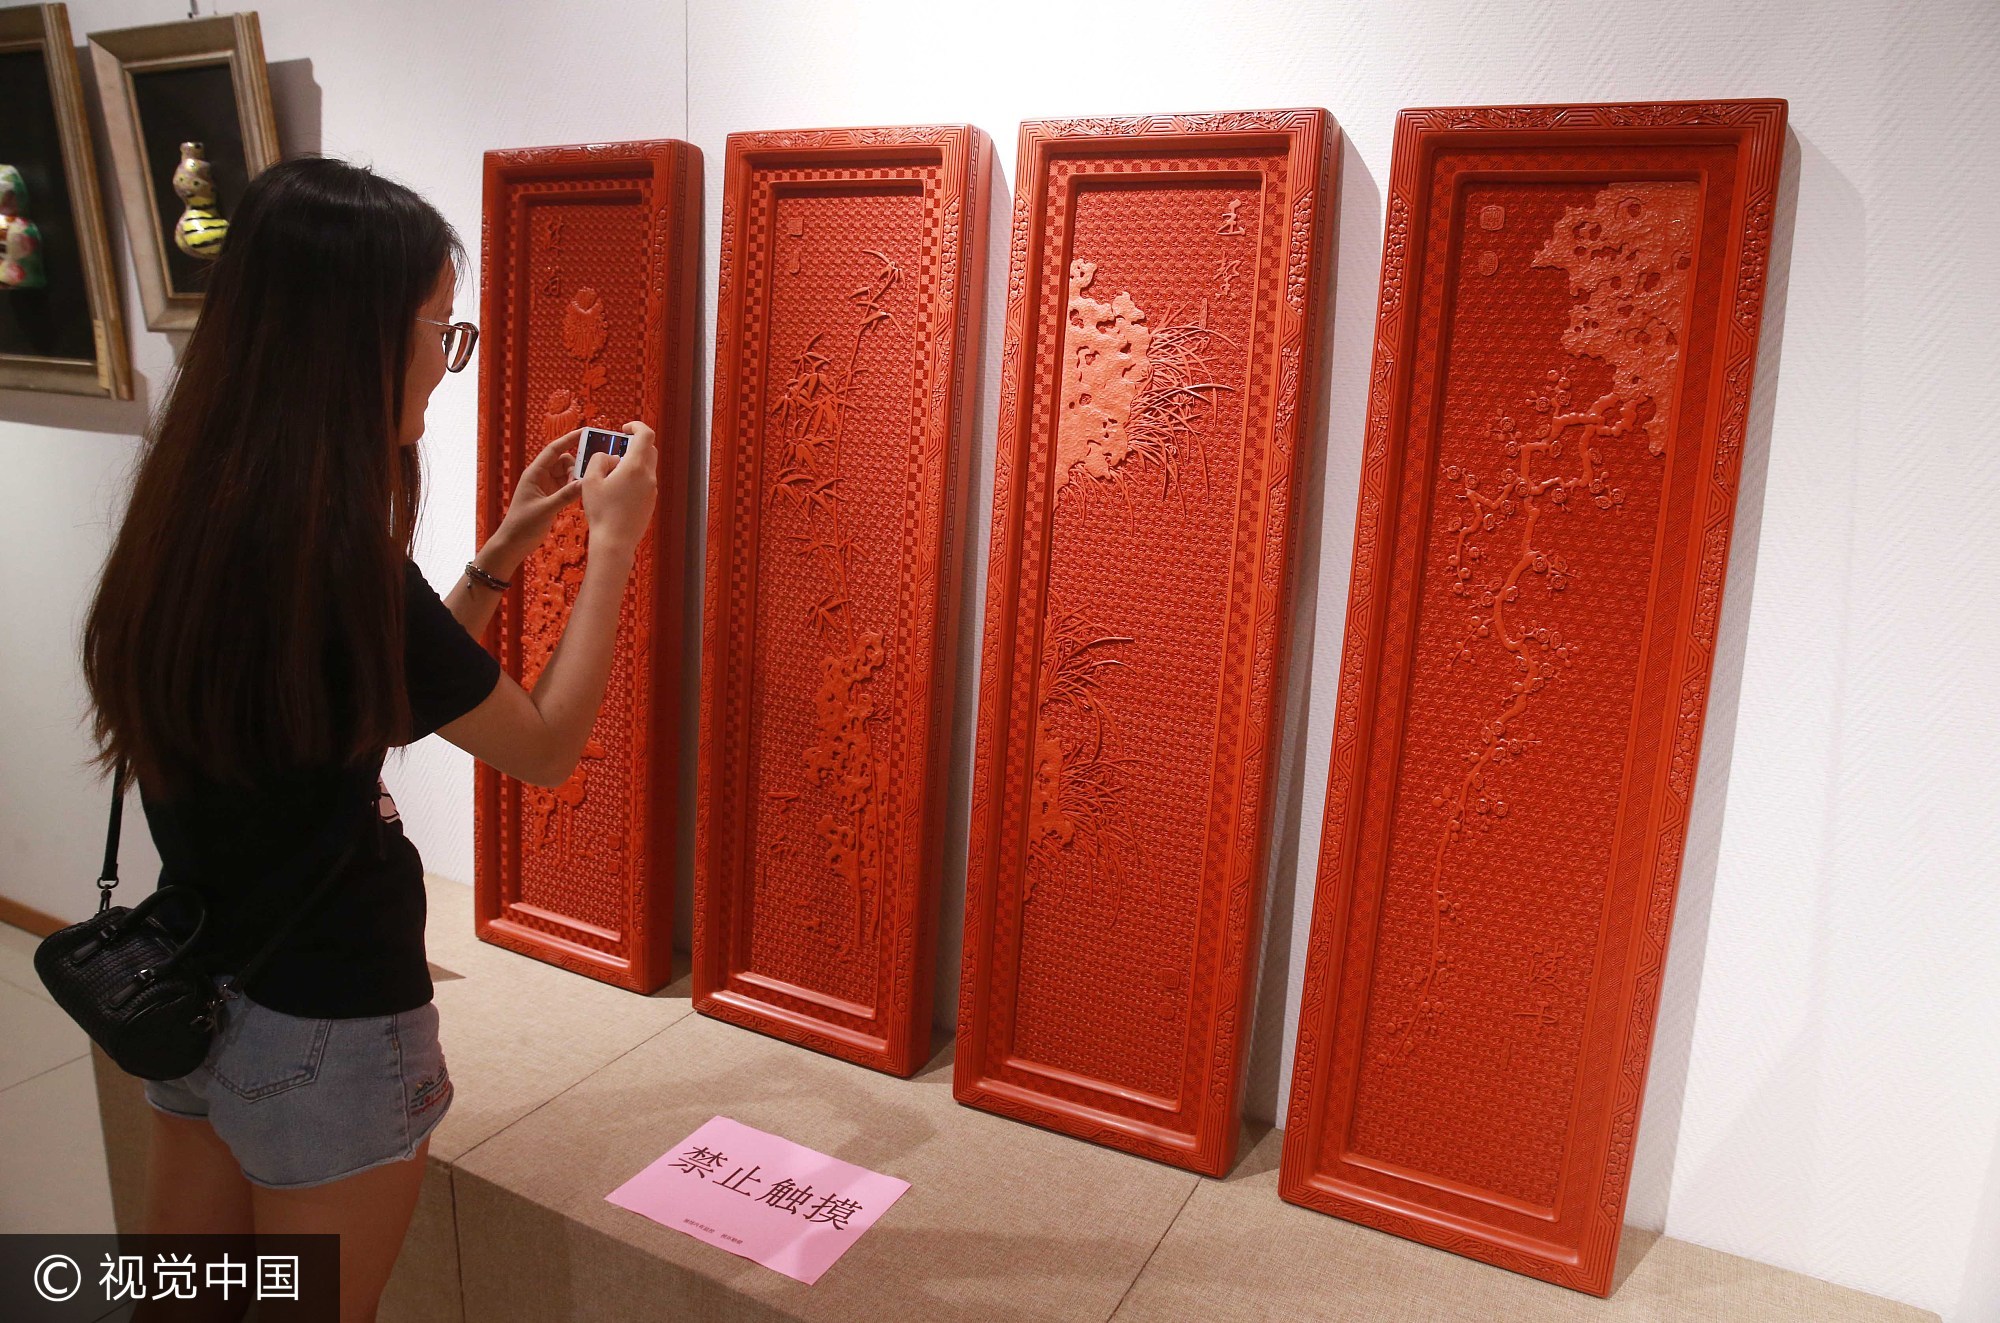 2017年9月3日，观众在北京工艺美术创新设计大赛作品展上用手机拍摄雕漆工艺作品《剔红梅兰竹菊四扇挂屏》。